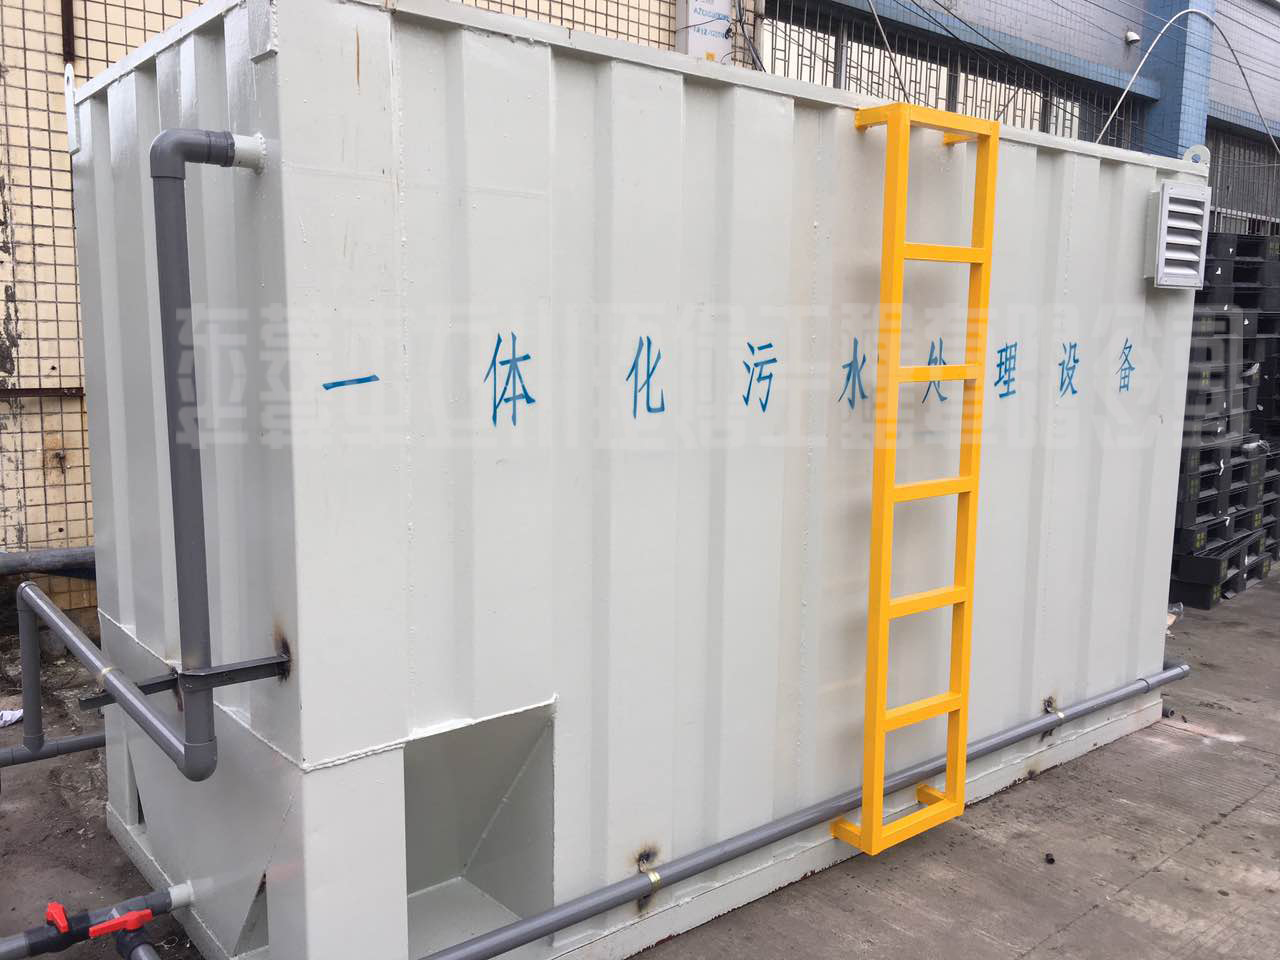 惠州生活污水处理设备